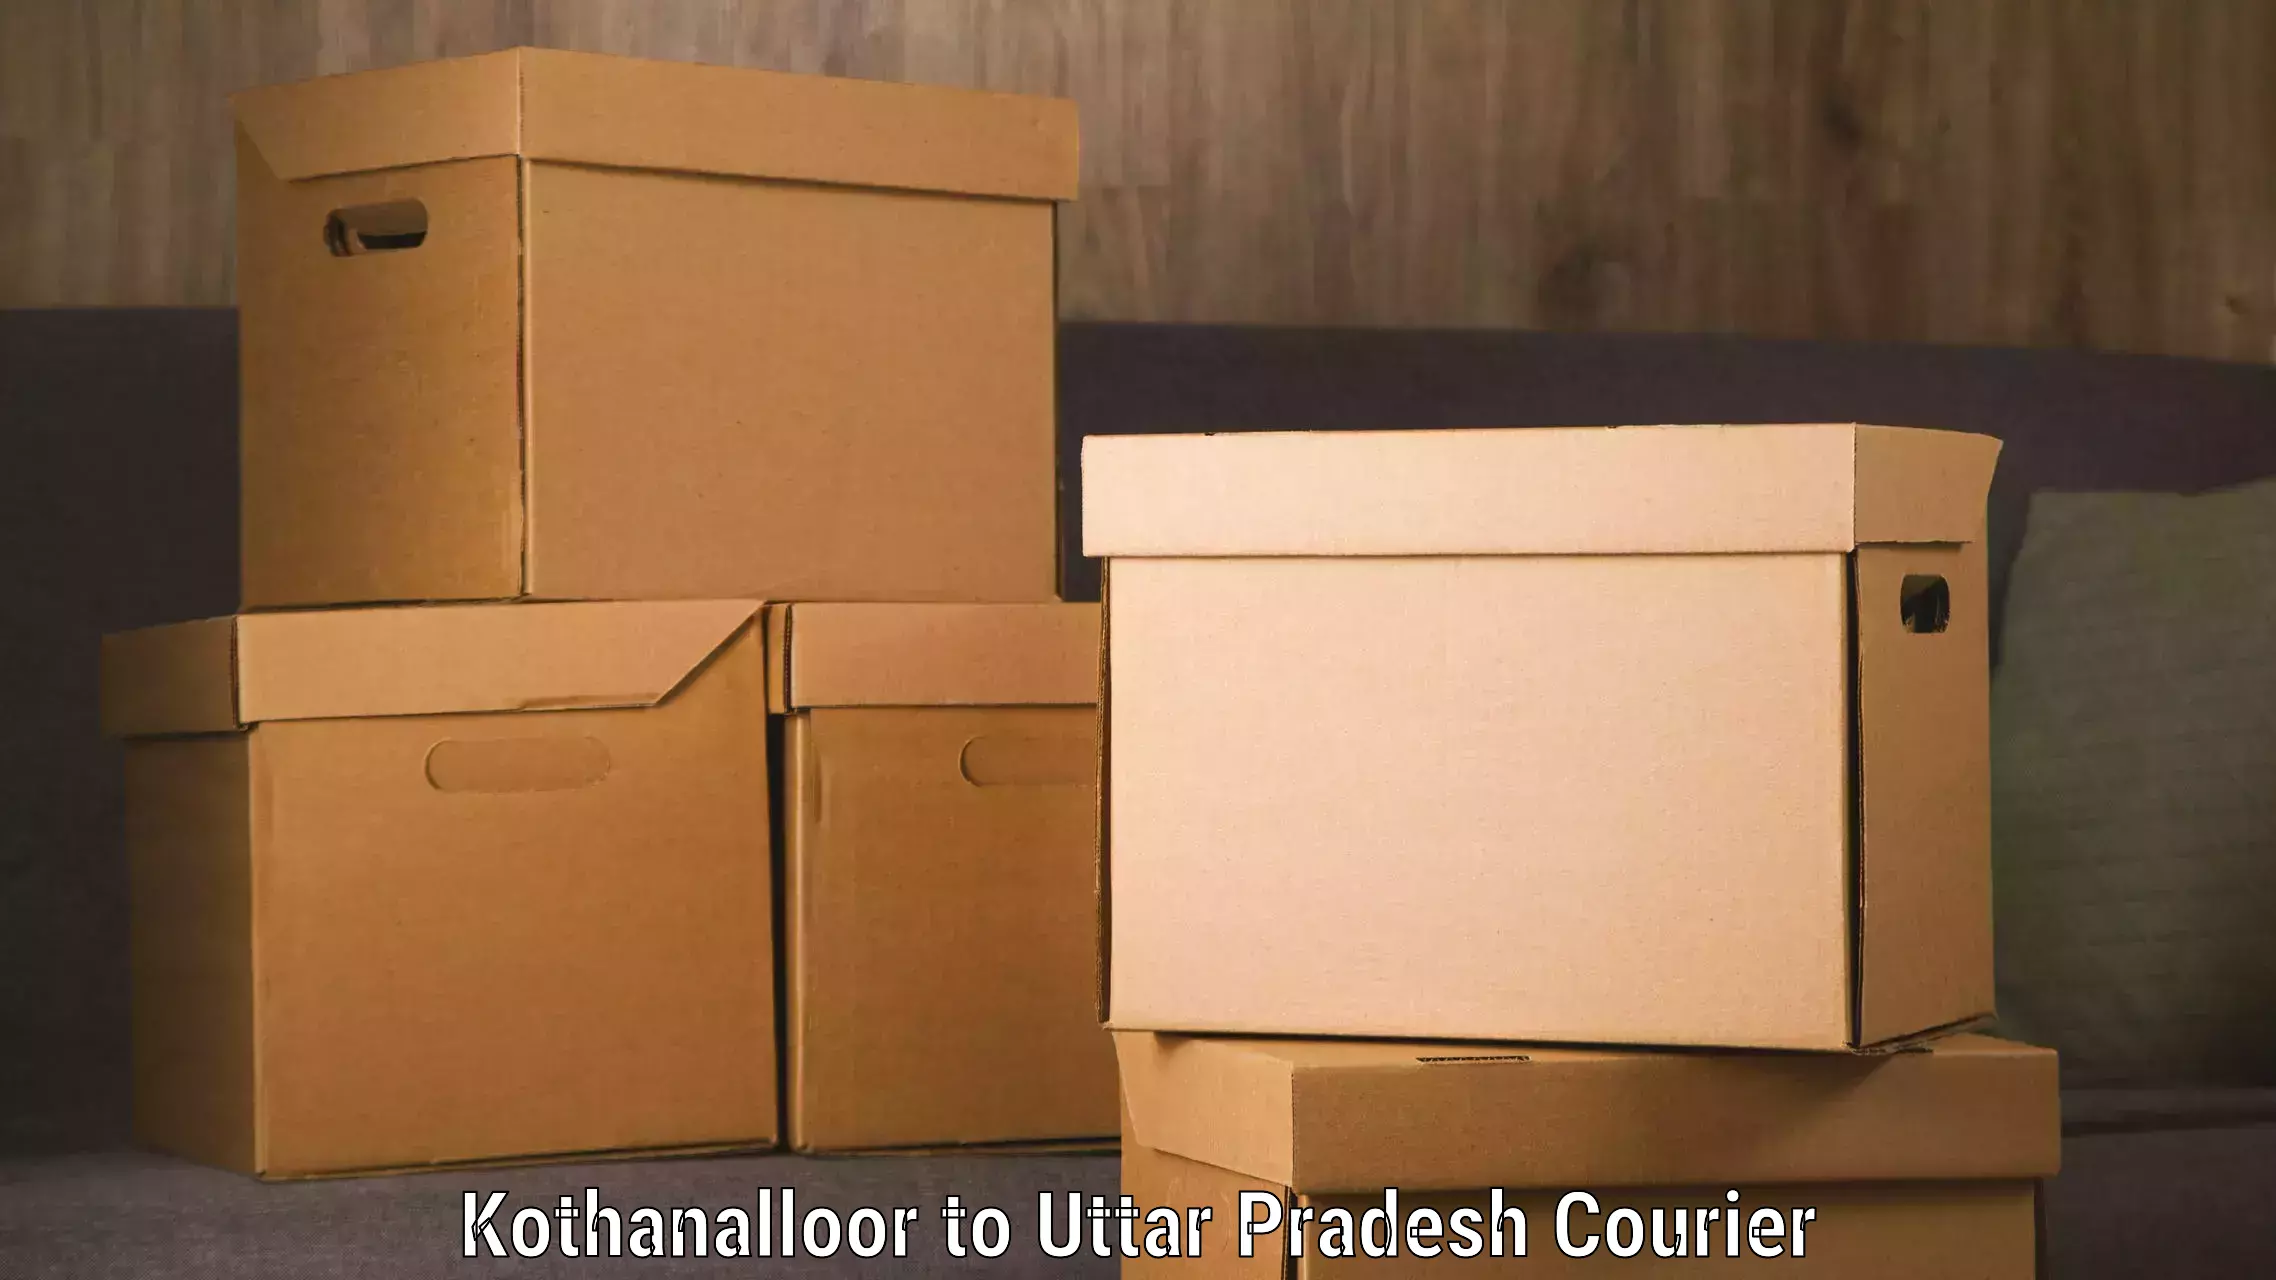 Cost-effective courier solutions Kothanalloor to Mohanlalganj